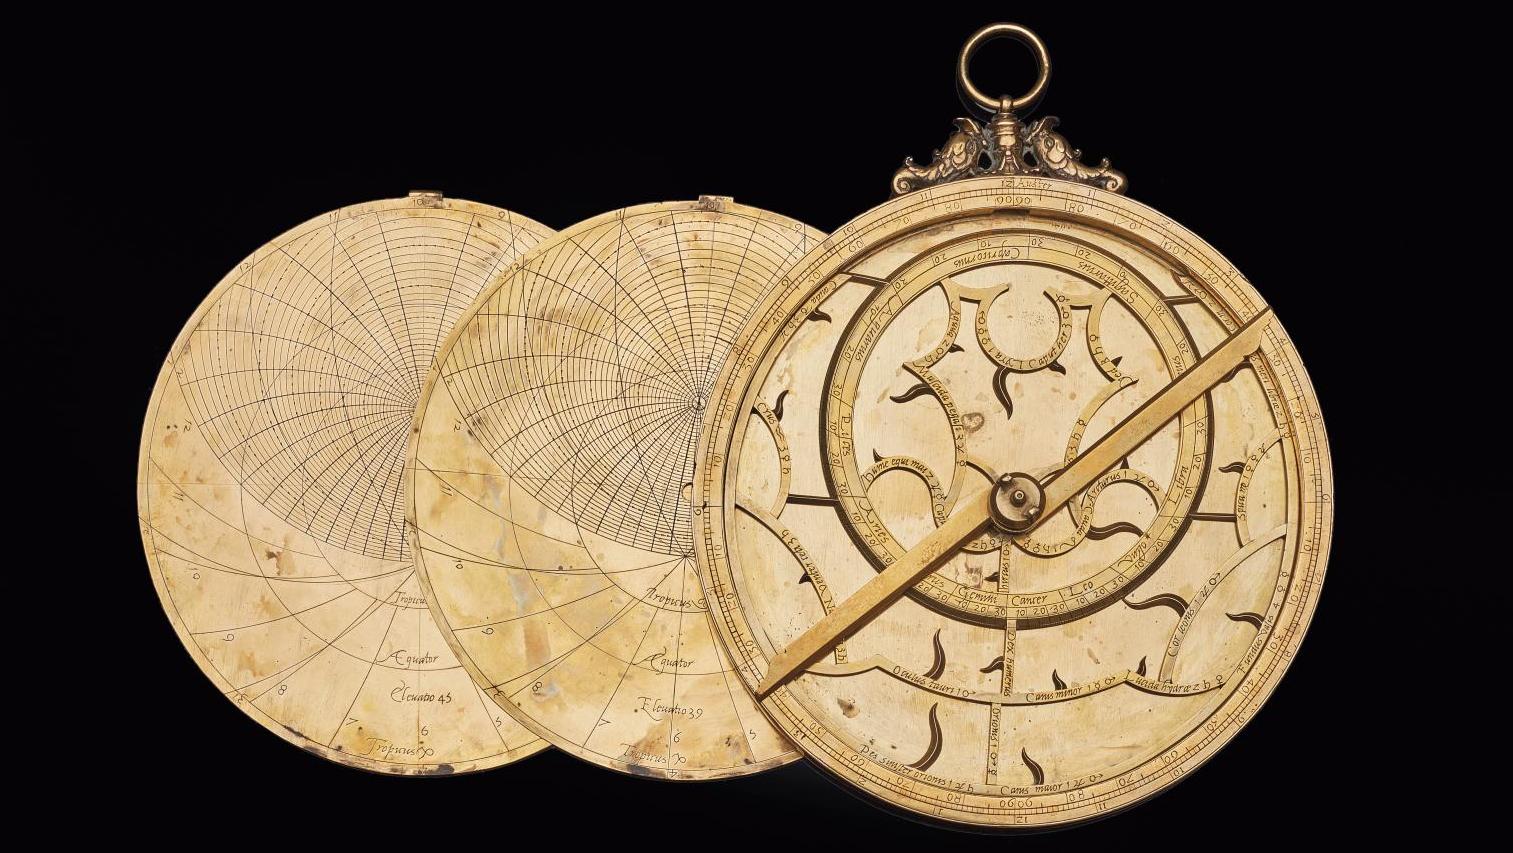 Astrolabe européen en laiton doré attribué à Michael Piquer, daté 1543, diam. 19,1... Un astrolabe du XVIe siècle placé sous une bonne étoile